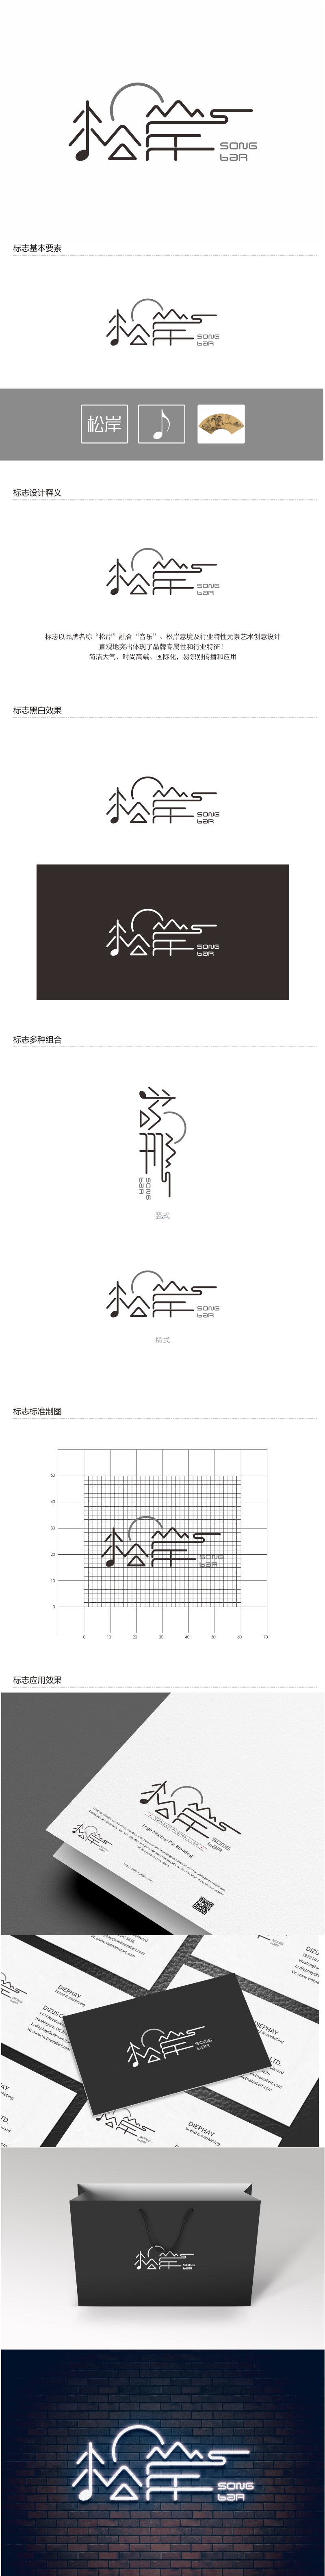 陈国伟的松岸logo设计